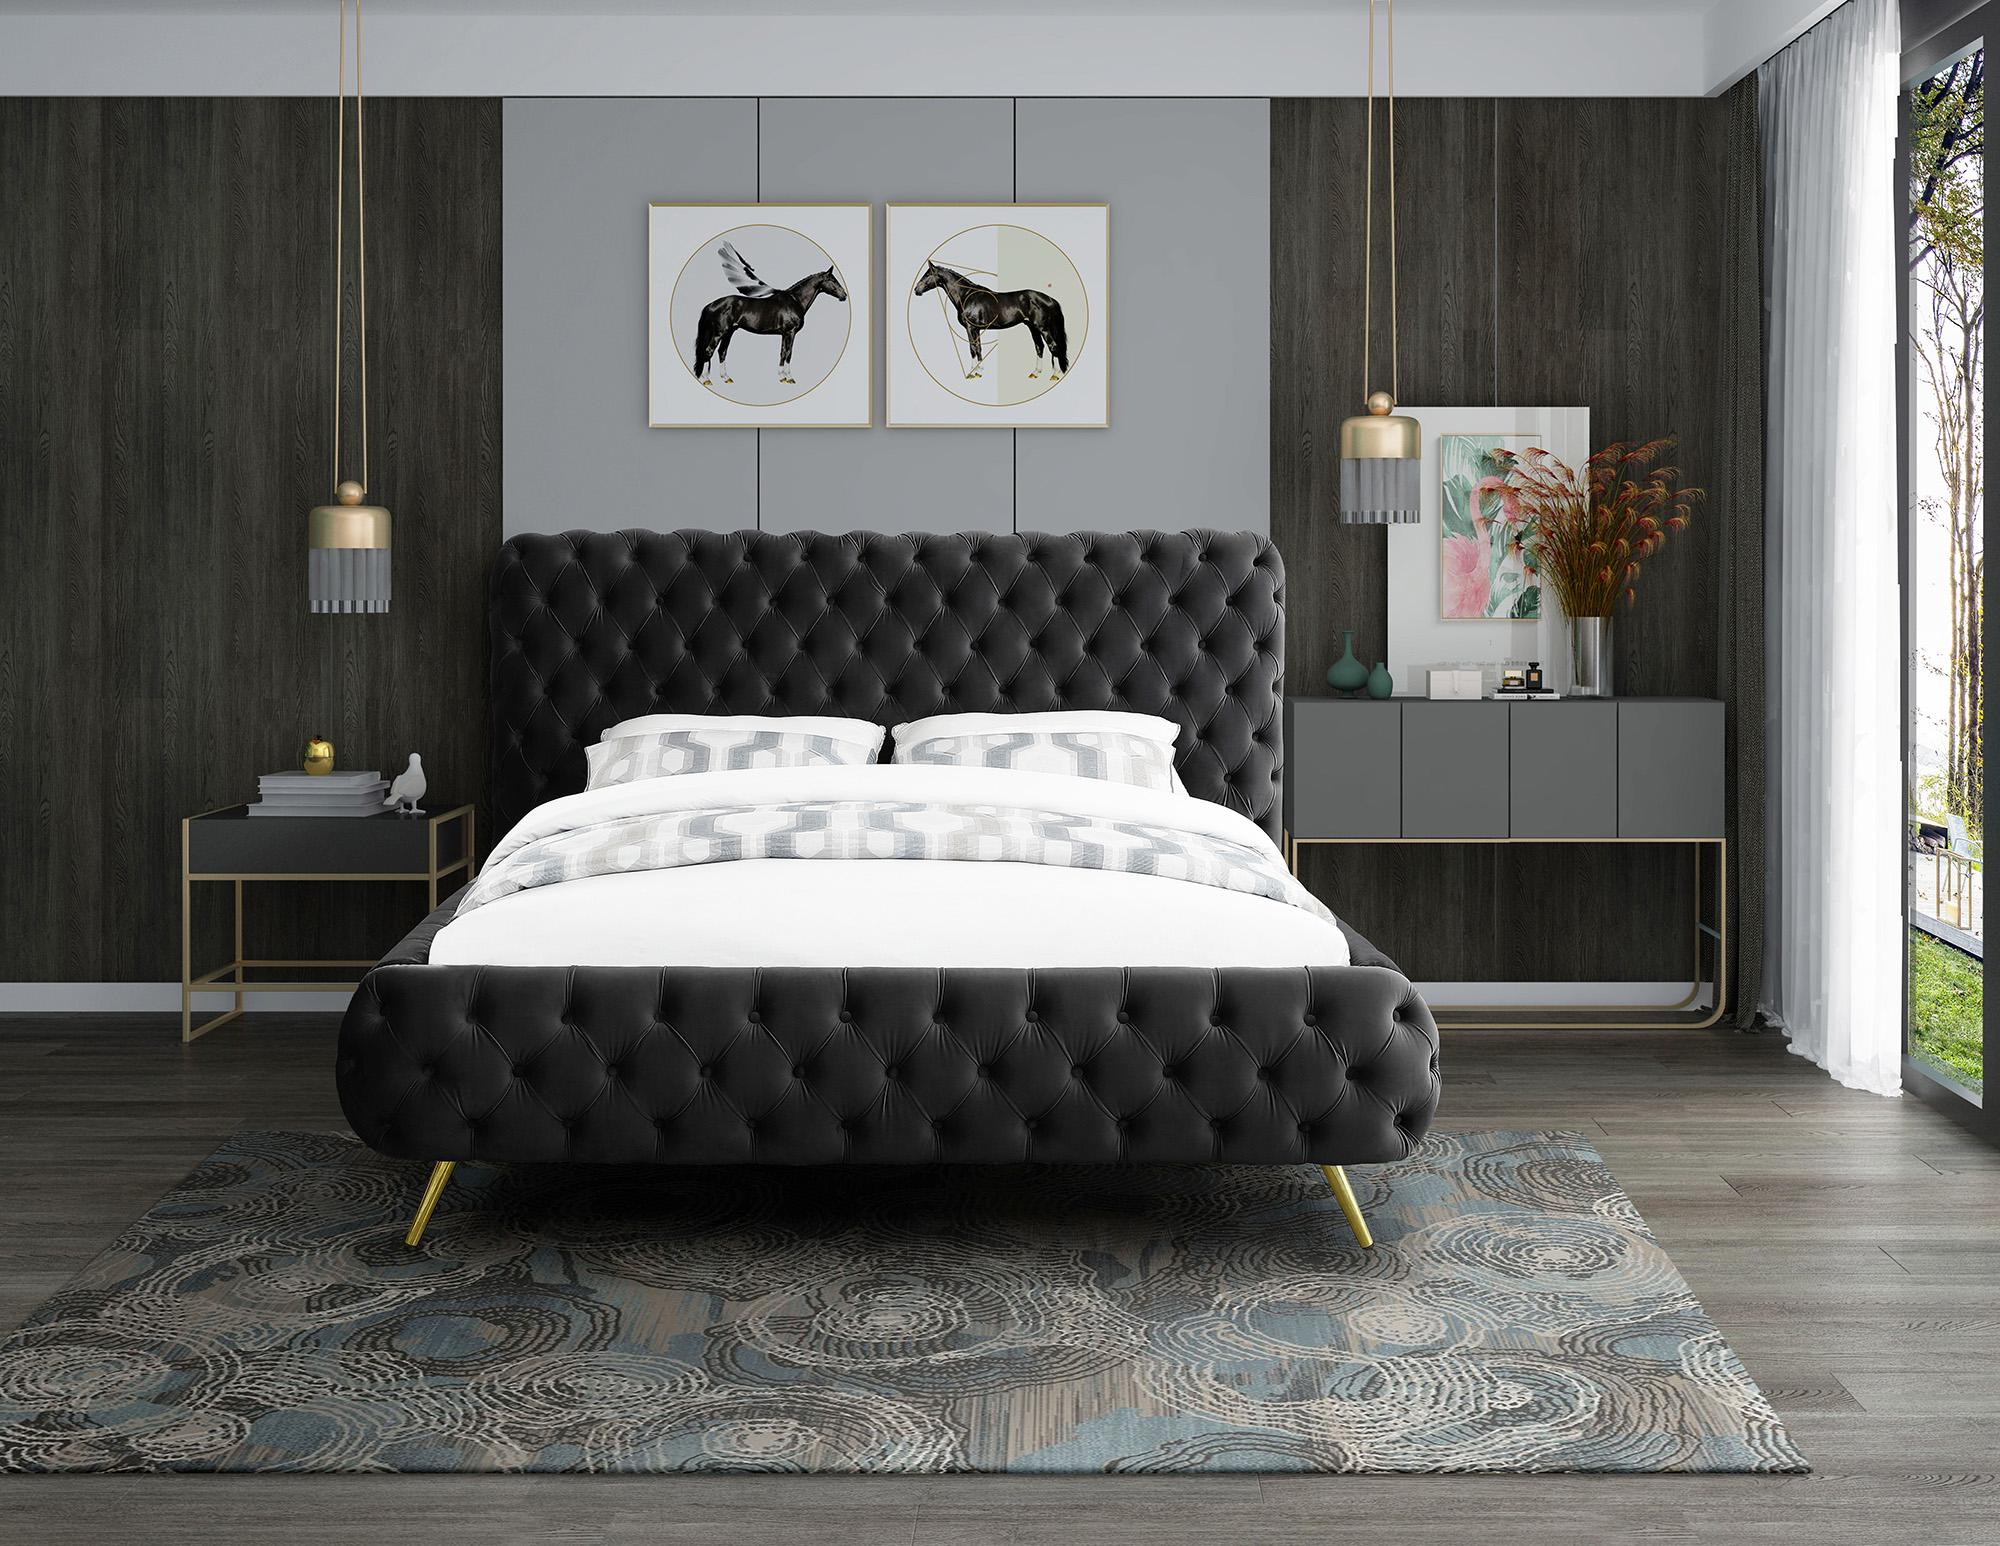 

    
Meridian Furniture DELANO DelanoBlack-Q Platform Bed Black DelanoBlack-Q
